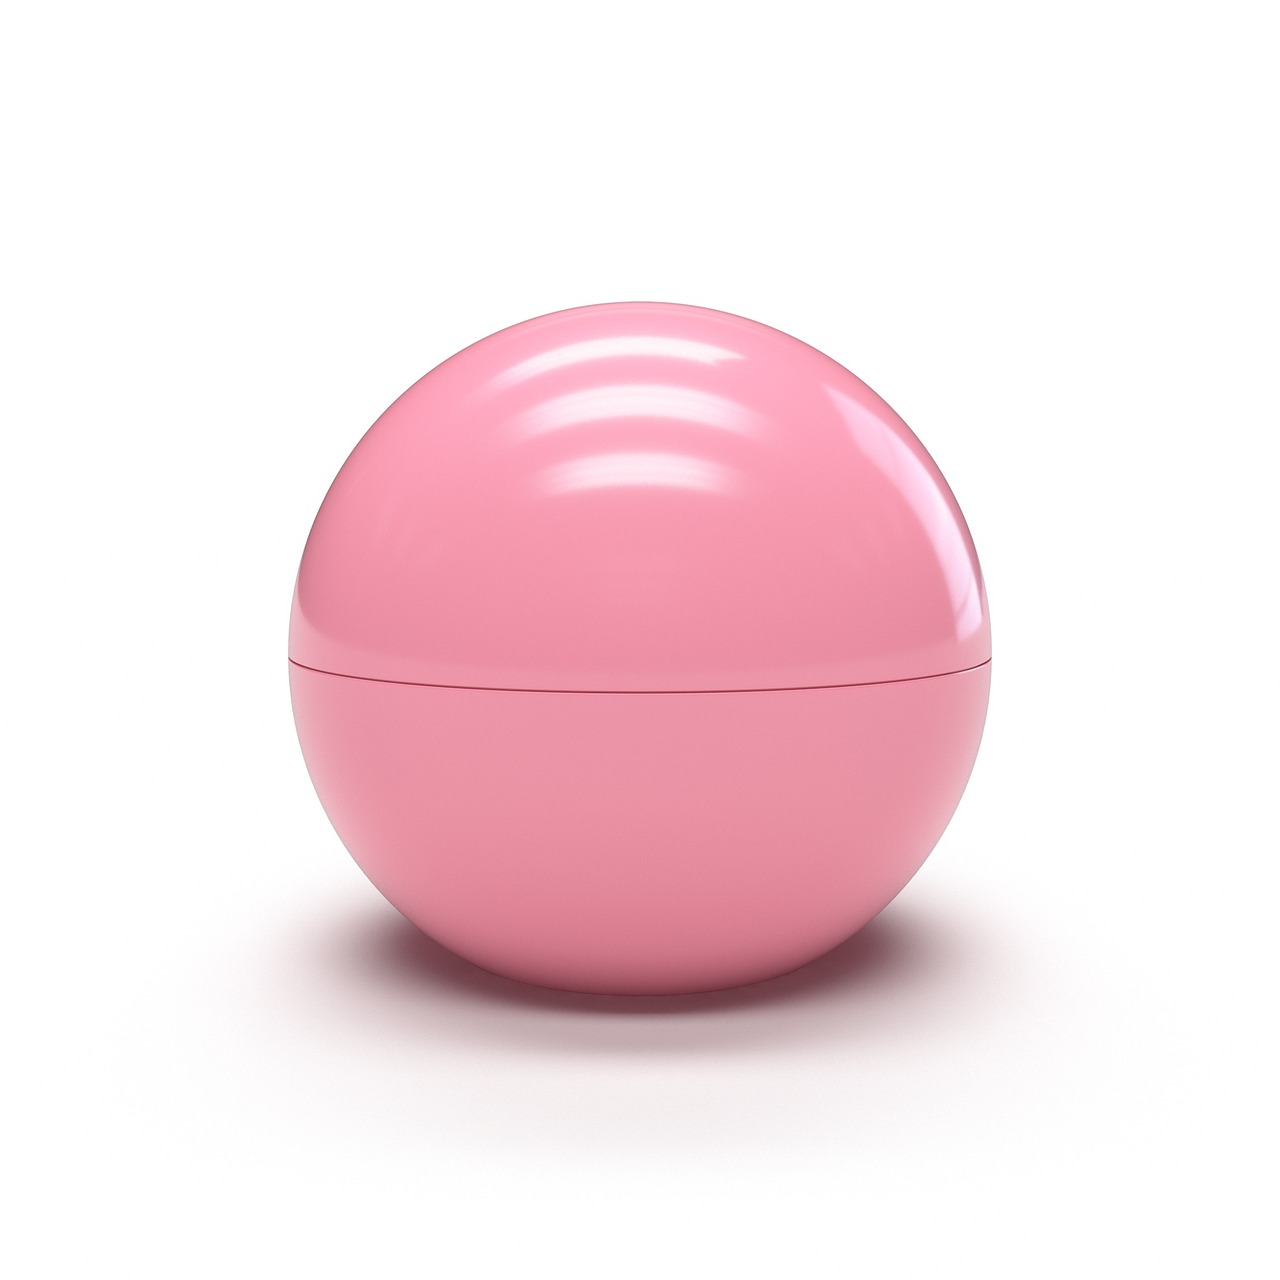 ball gloss pink free photo